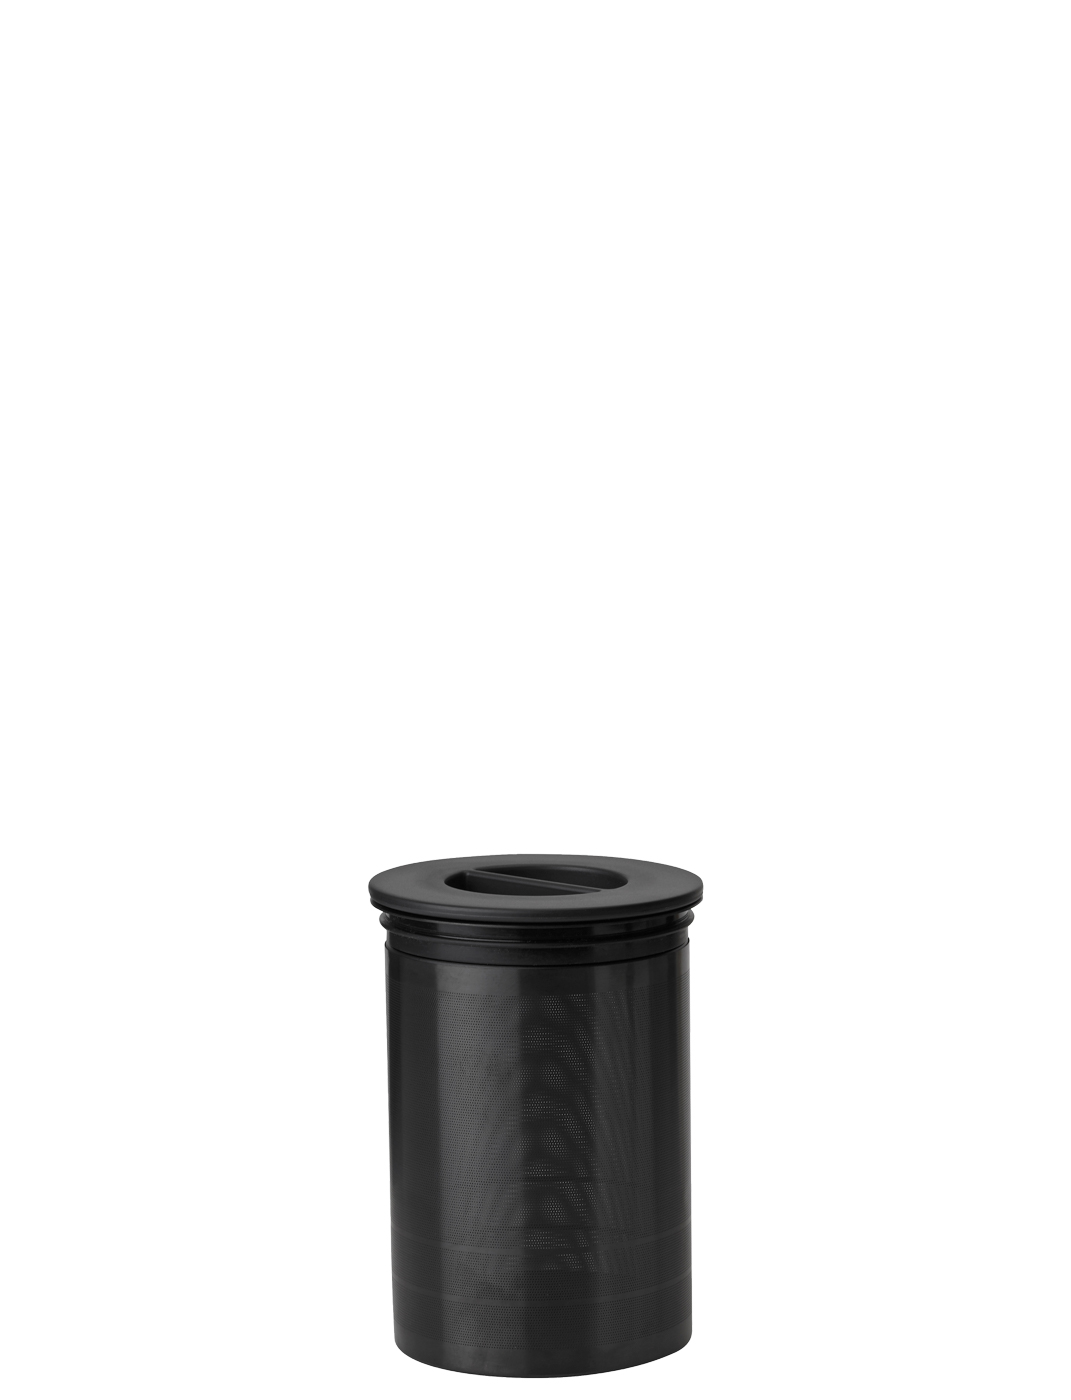 Nohr Filter für cold brew black metallic - Maße: 9,5 x 9,5 x 13,5 cm - von Stelton